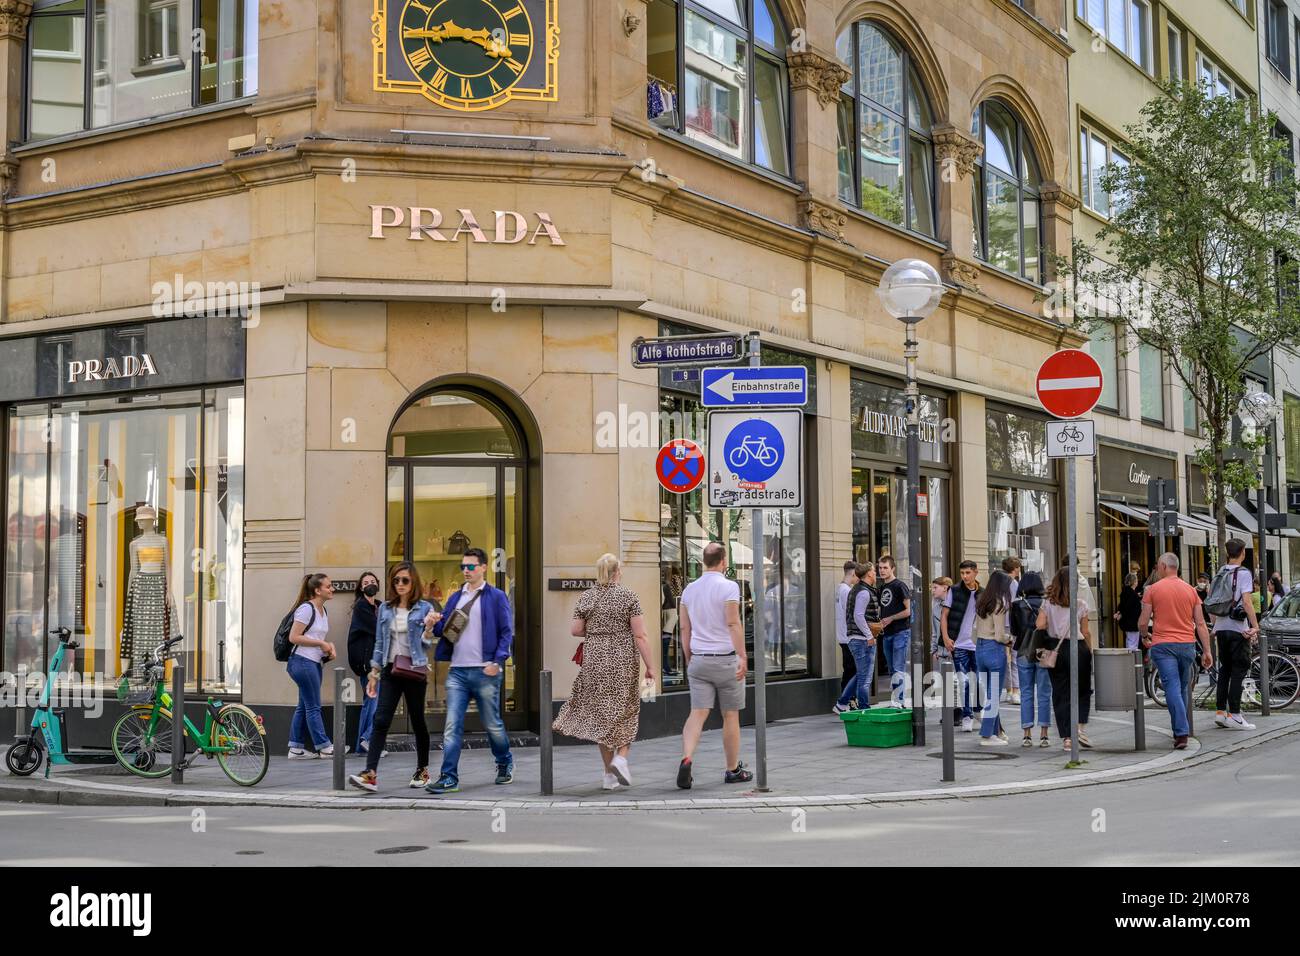 Prada, Einkaufen, Menschen, Goethestraße, Frankfurt am Main, Hessen, Deutschland Stock Photo